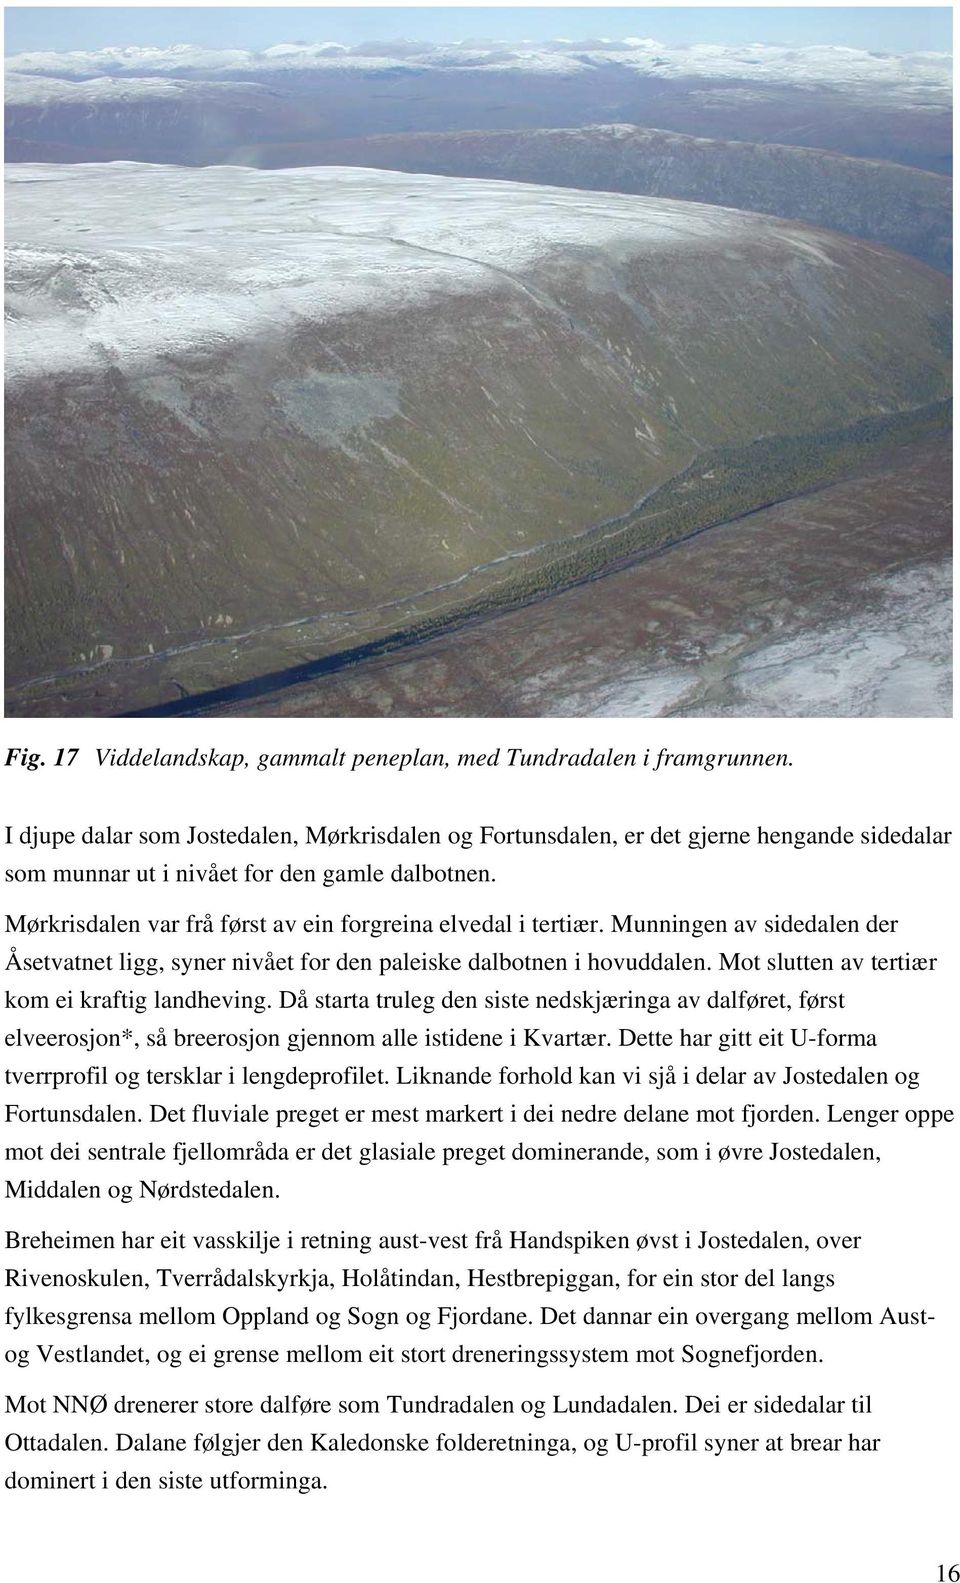 Mørkrisdalen var frå først av ein forgreina elvedal i tertiær. Munningen av sidedalen der Åsetvatnet ligg, syner nivået for den paleiske dalbotnen i hovuddalen.